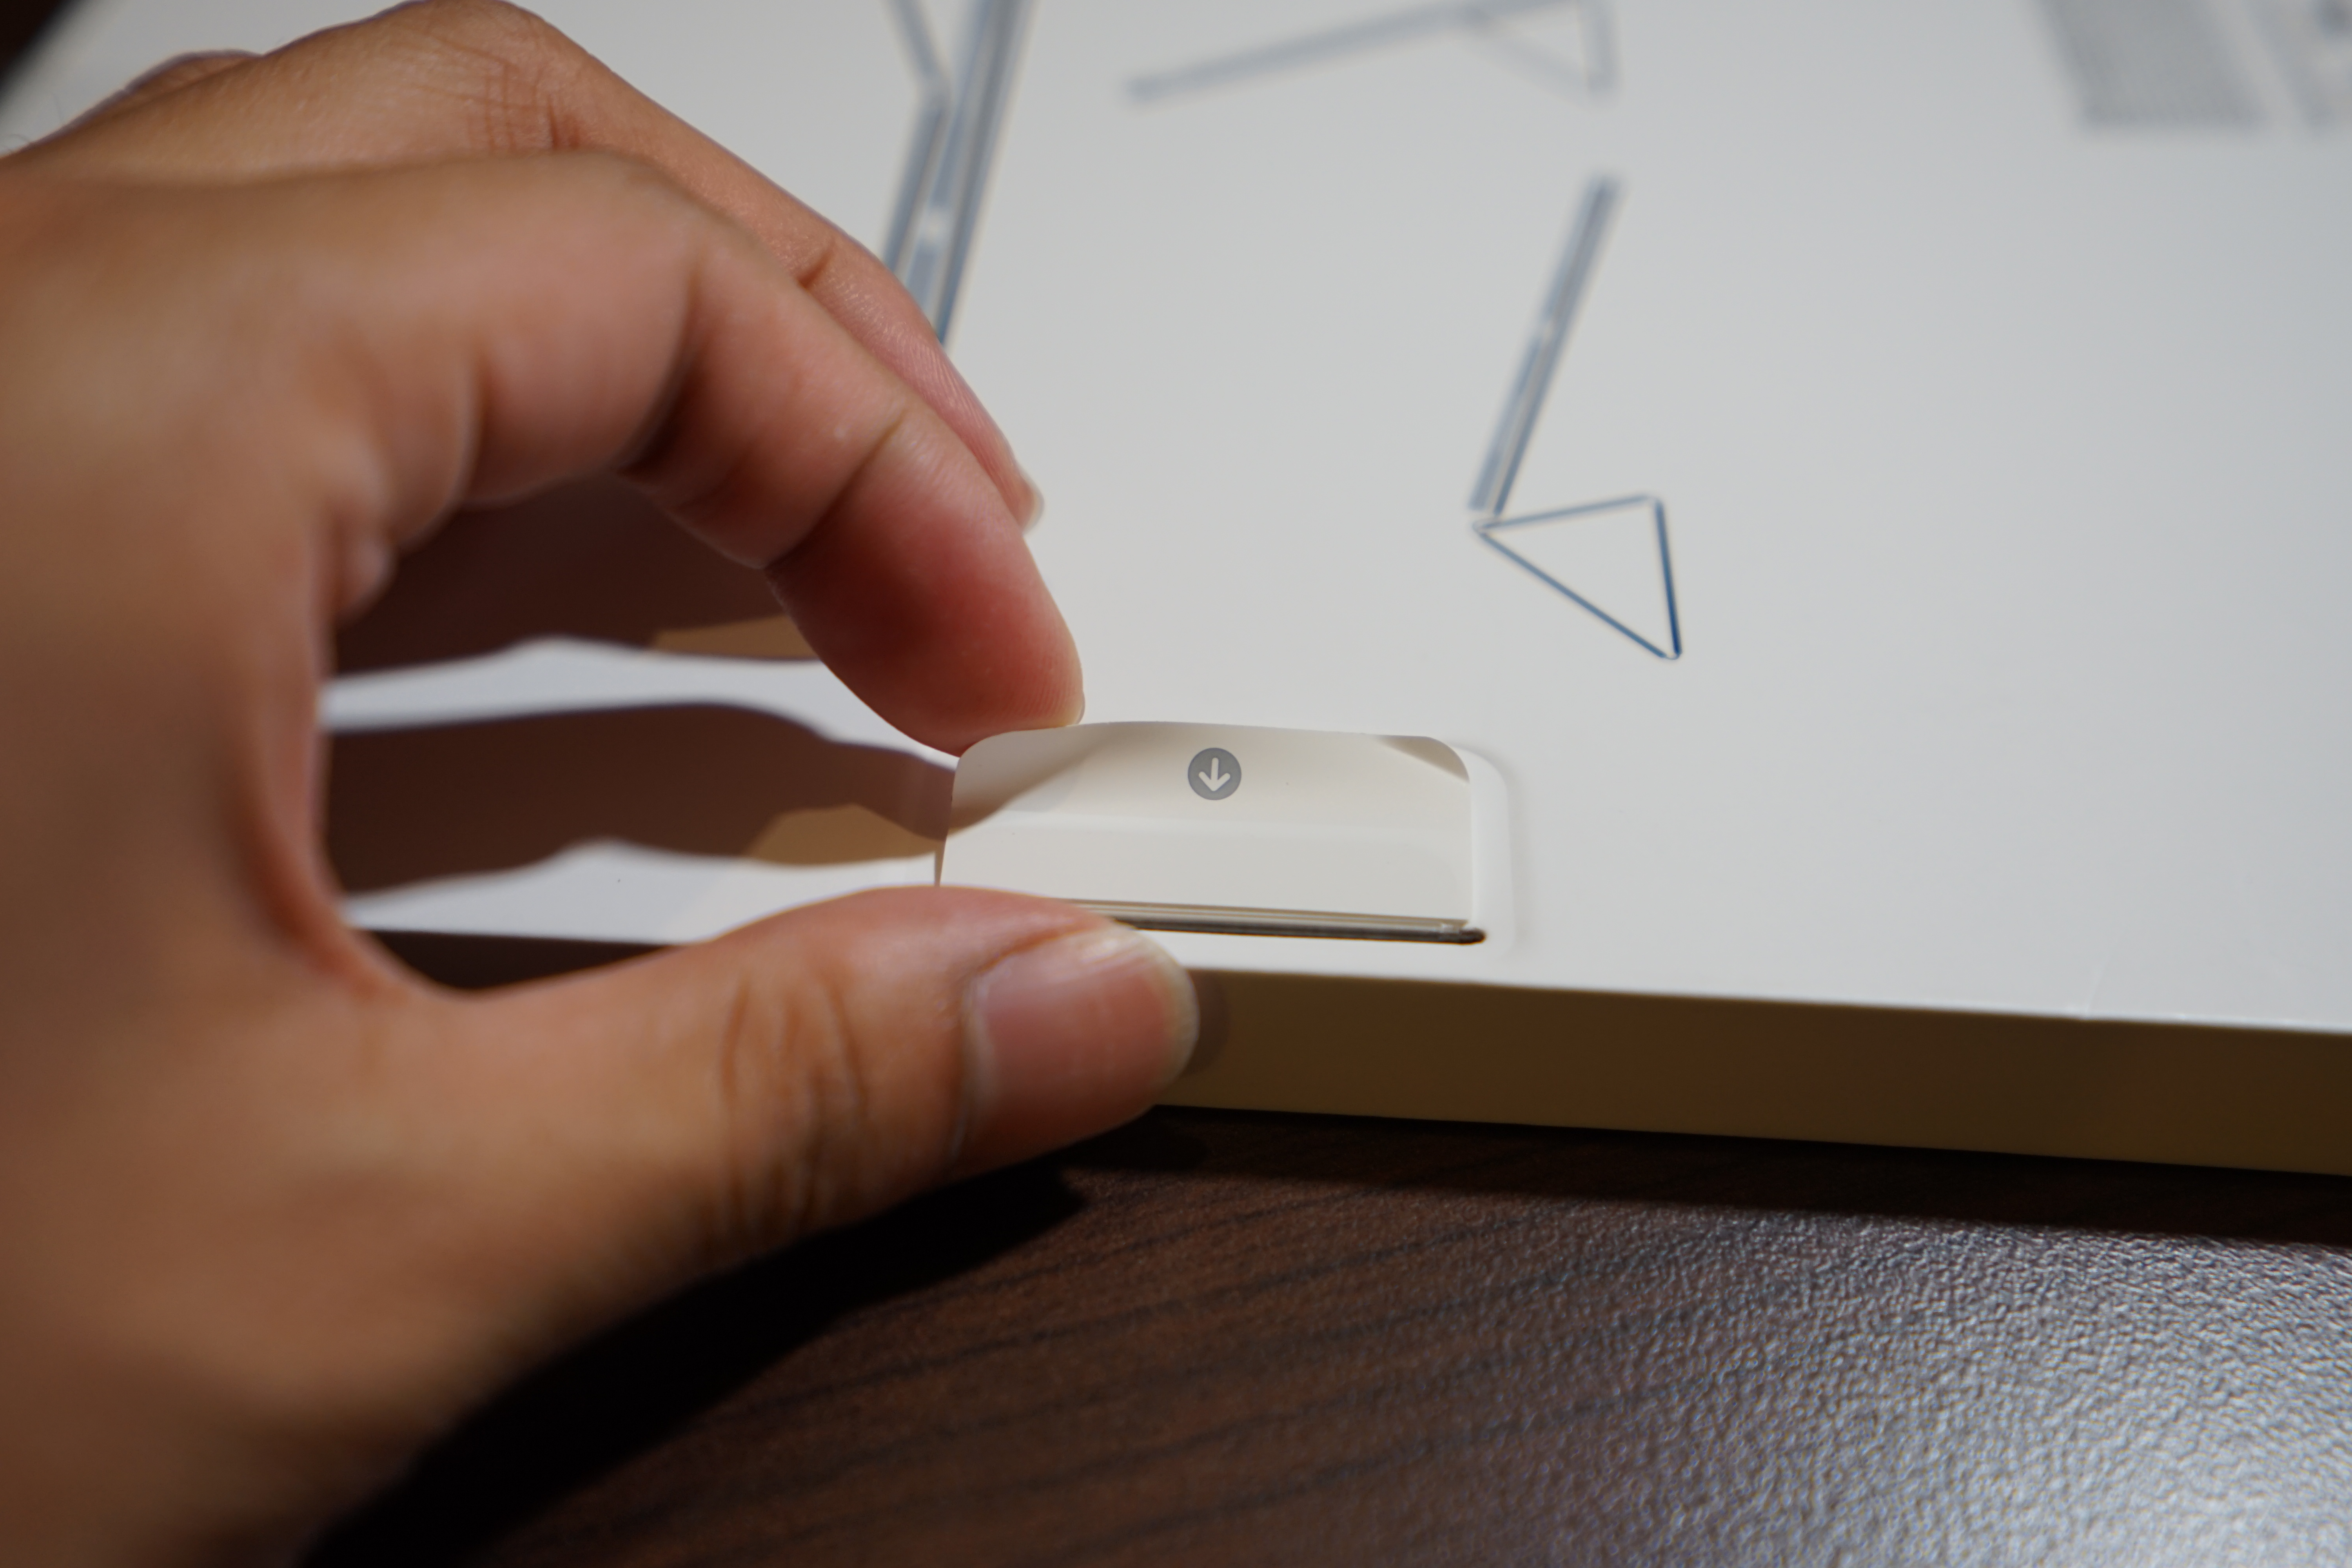 Apple Smart Folio Box Pull Tab